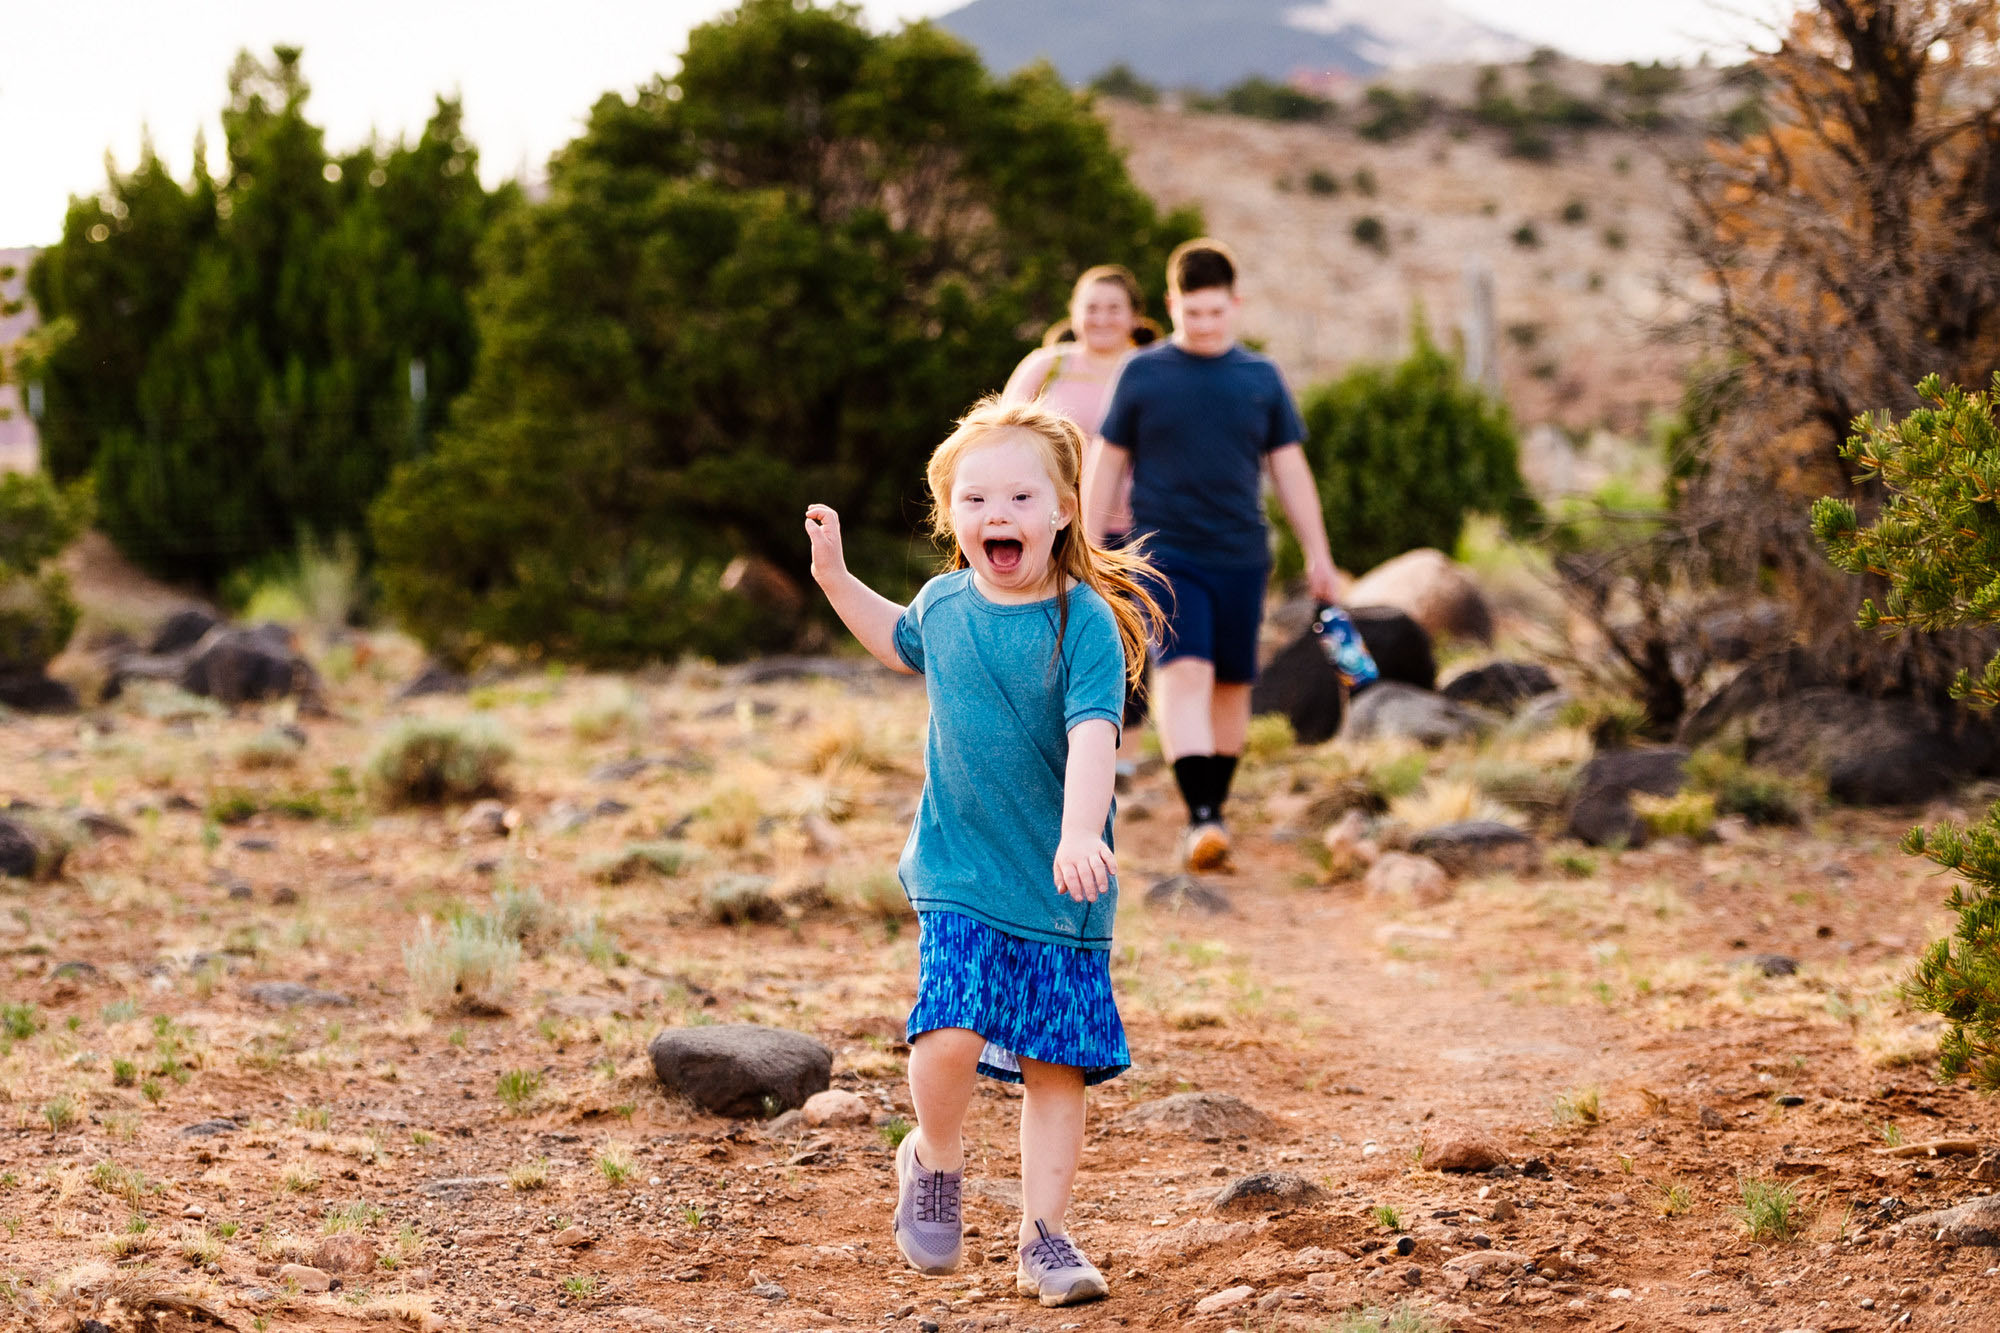 Herriman Splash Pads - Utah's Adventure Family